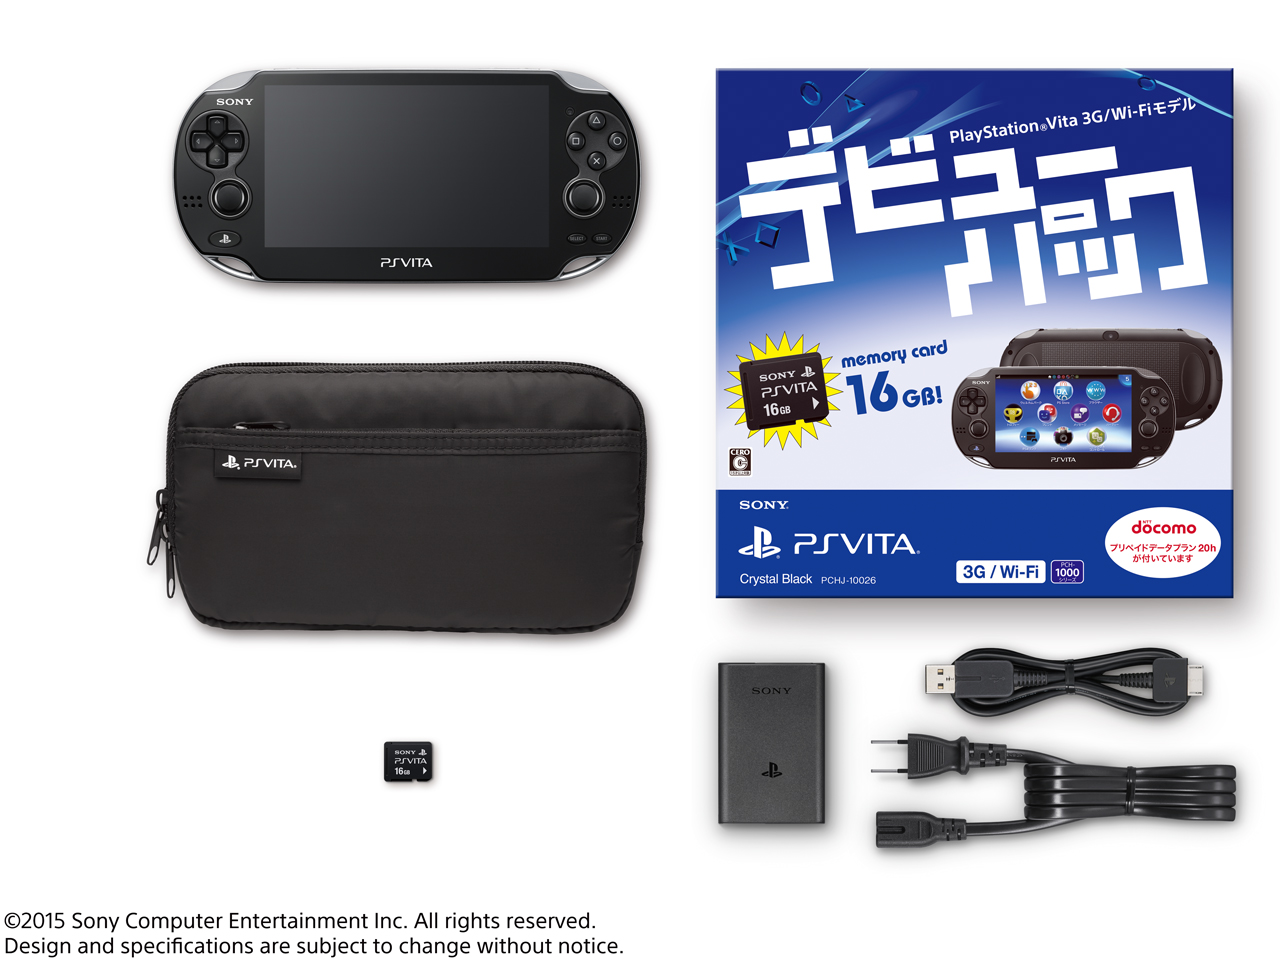 価格.com - 『セット内容』 PlayStation Vita (プレイステーション ヴィータ) デビューパック 3G/Wi-Fiモデル